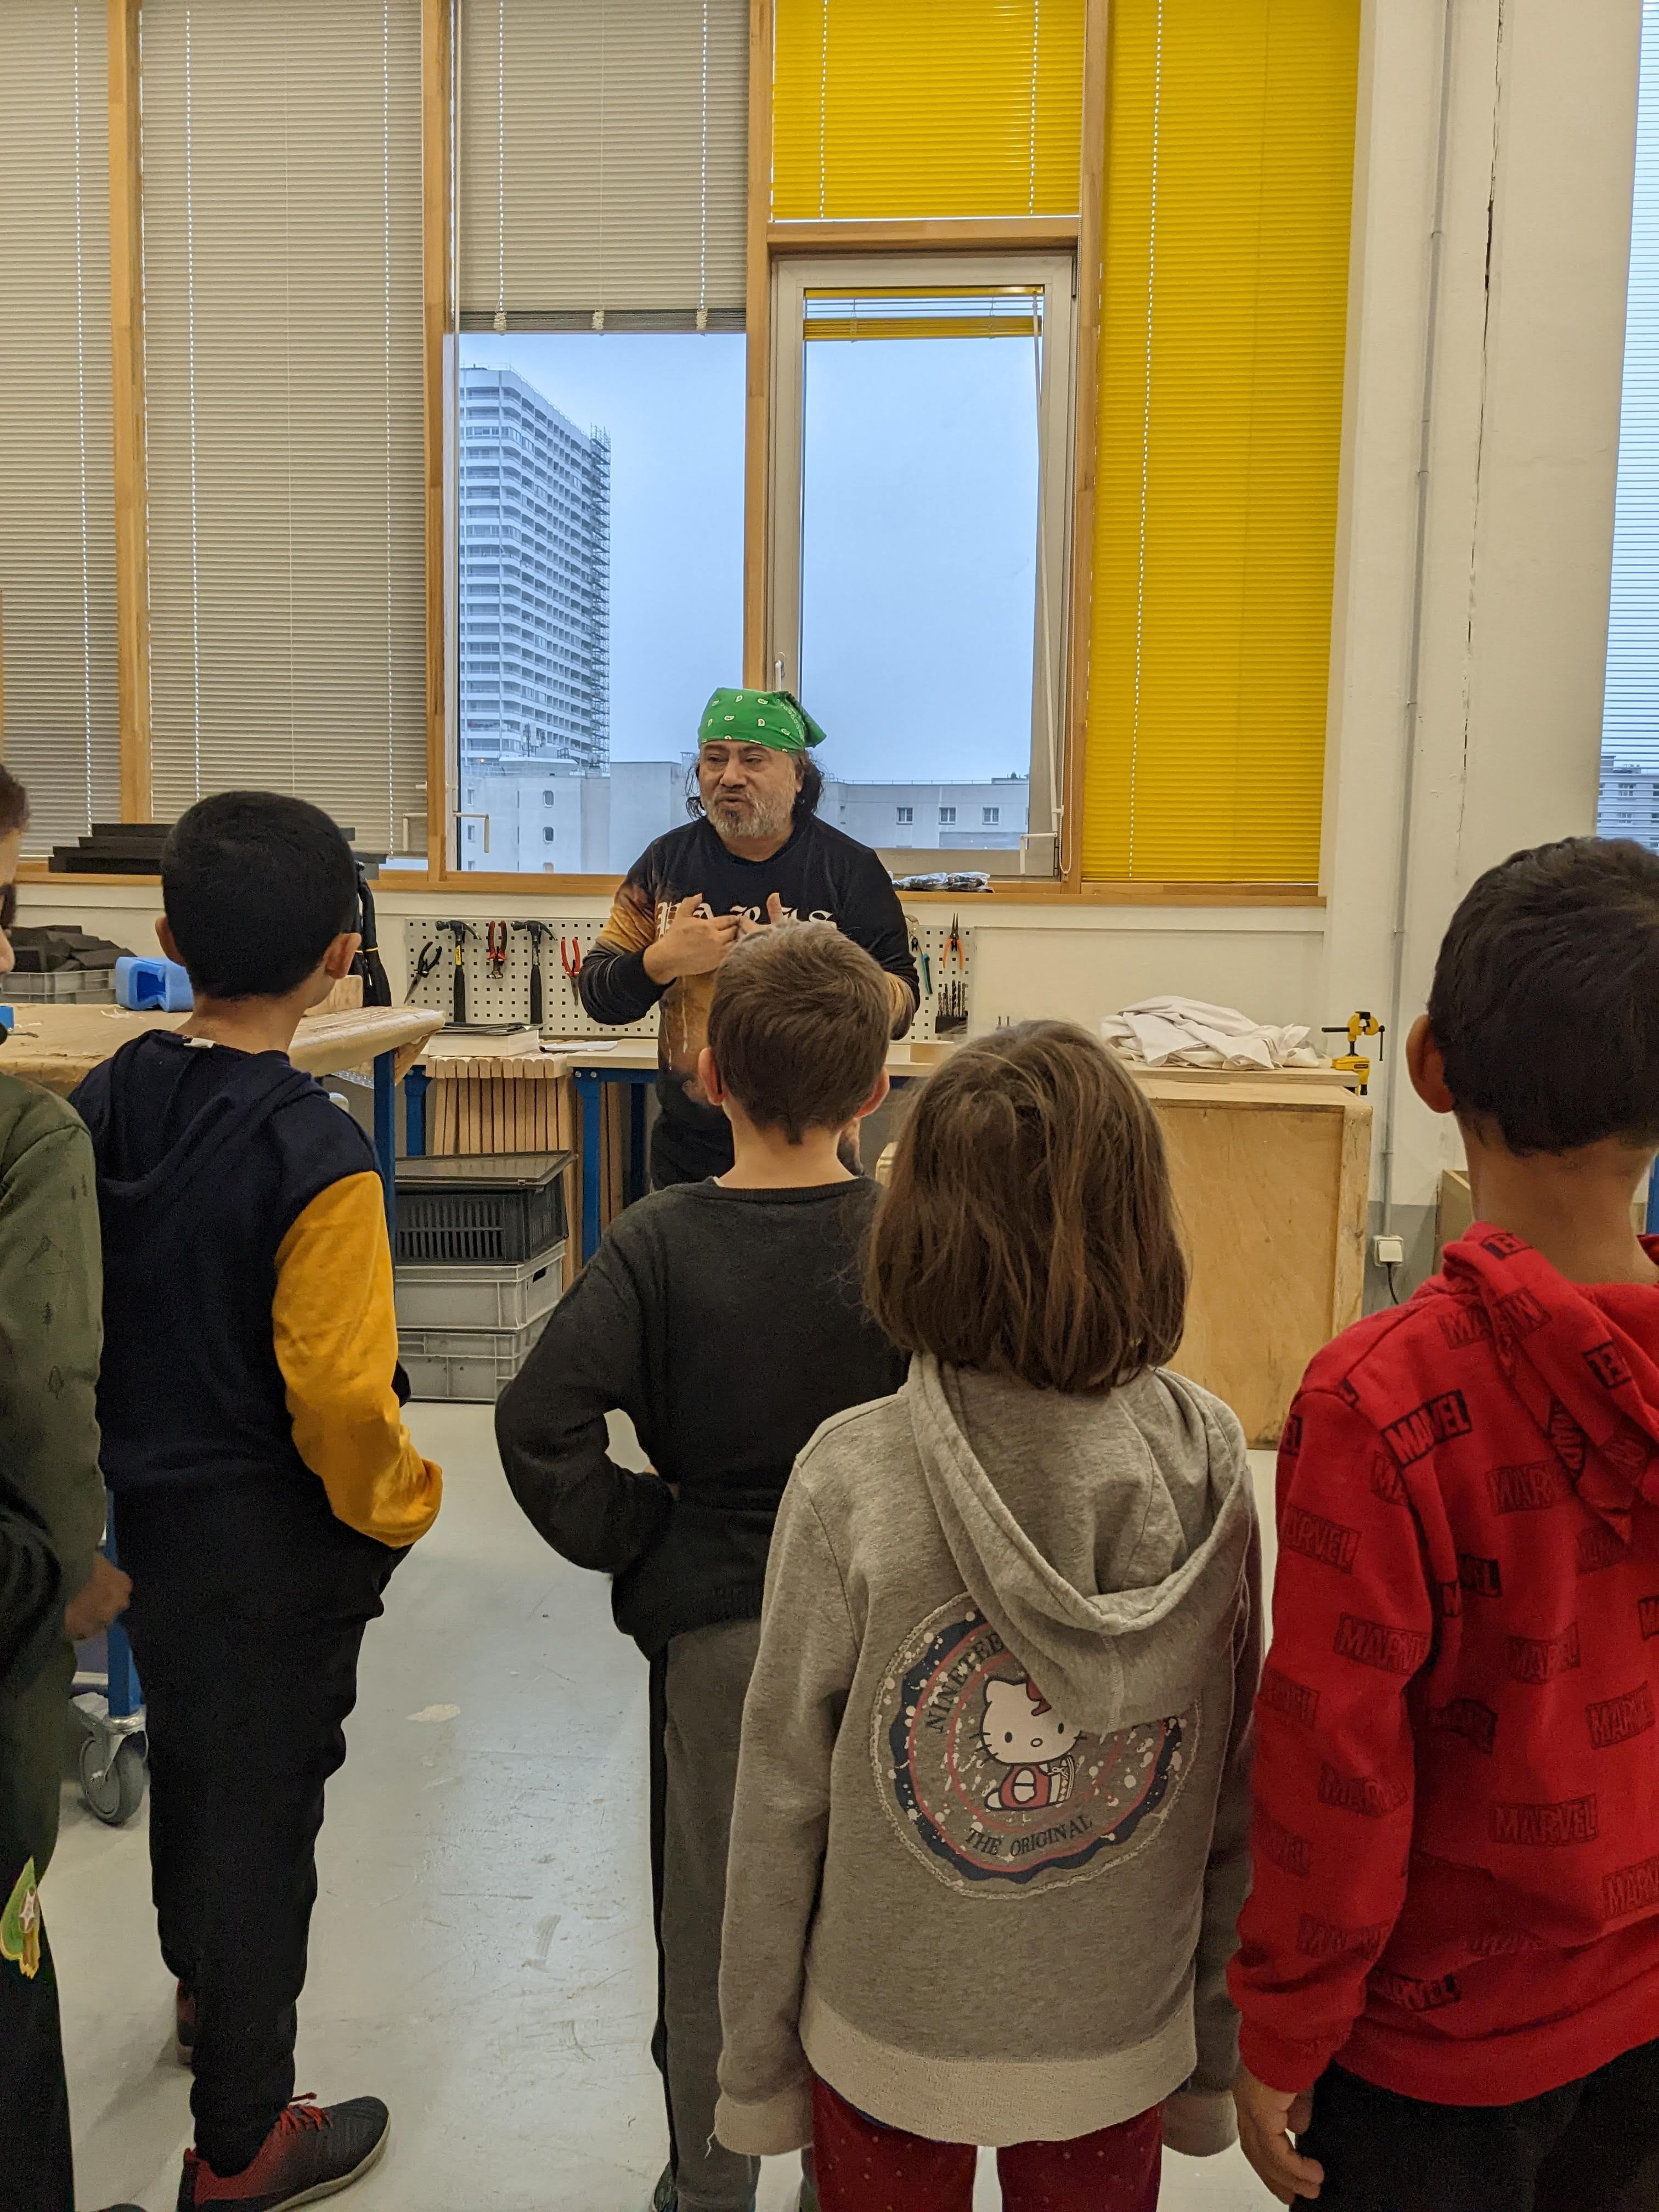 Les scolaires de la classe Ce1 de l'école du Télégraphe (20e) rencontre dans l'atelier de la régie un installateur monteur qui leur décrit son travail et les matériaux utilisés pour conserver les oeuvres.